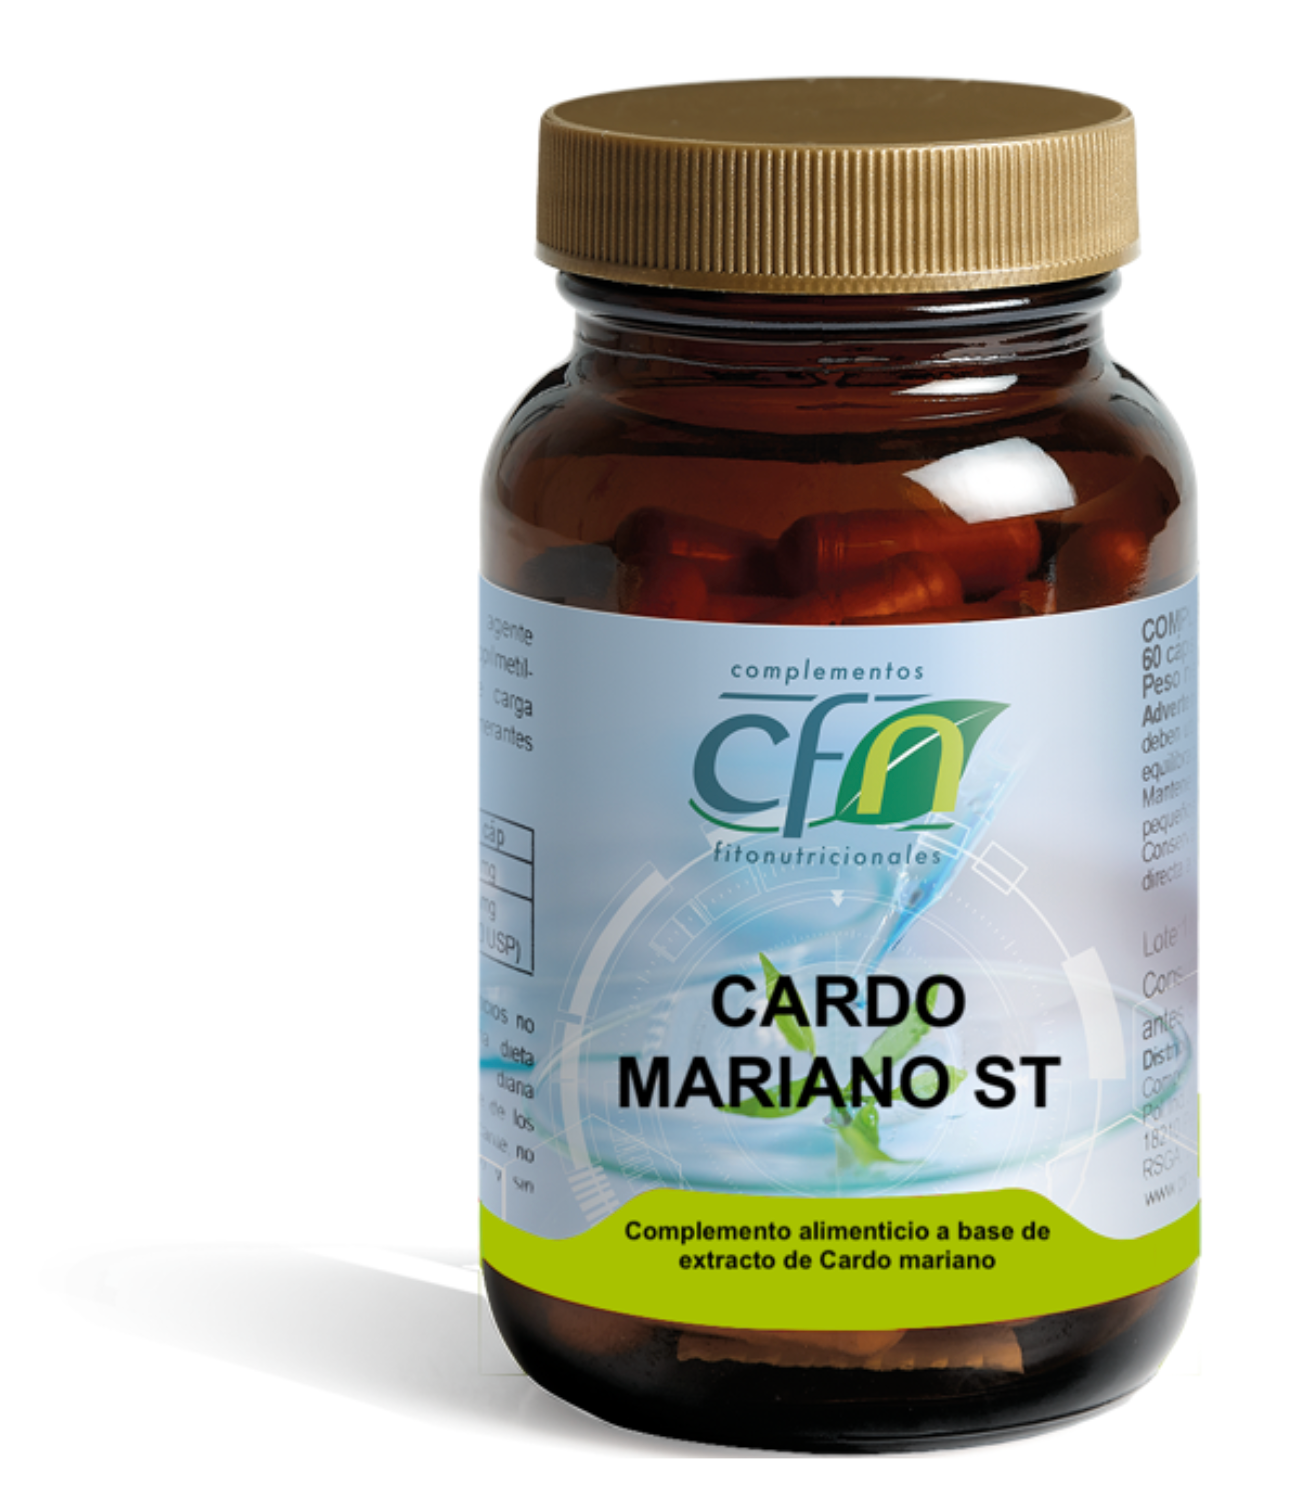 CARDO MARIANO ST